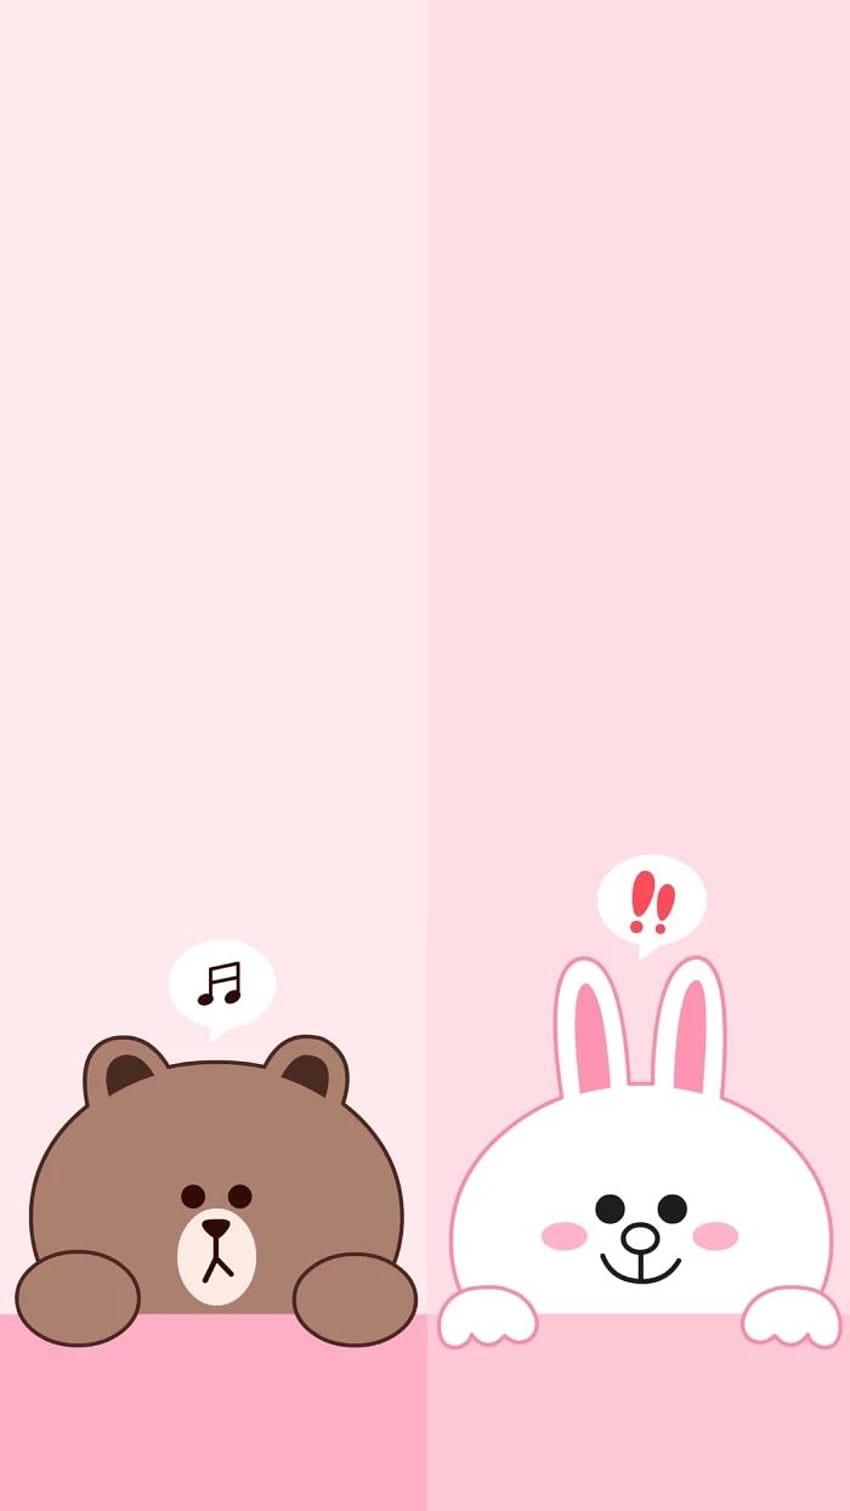 Lindo oso y conejito, conejito rosa iphone fondo de pantalla del teléfono